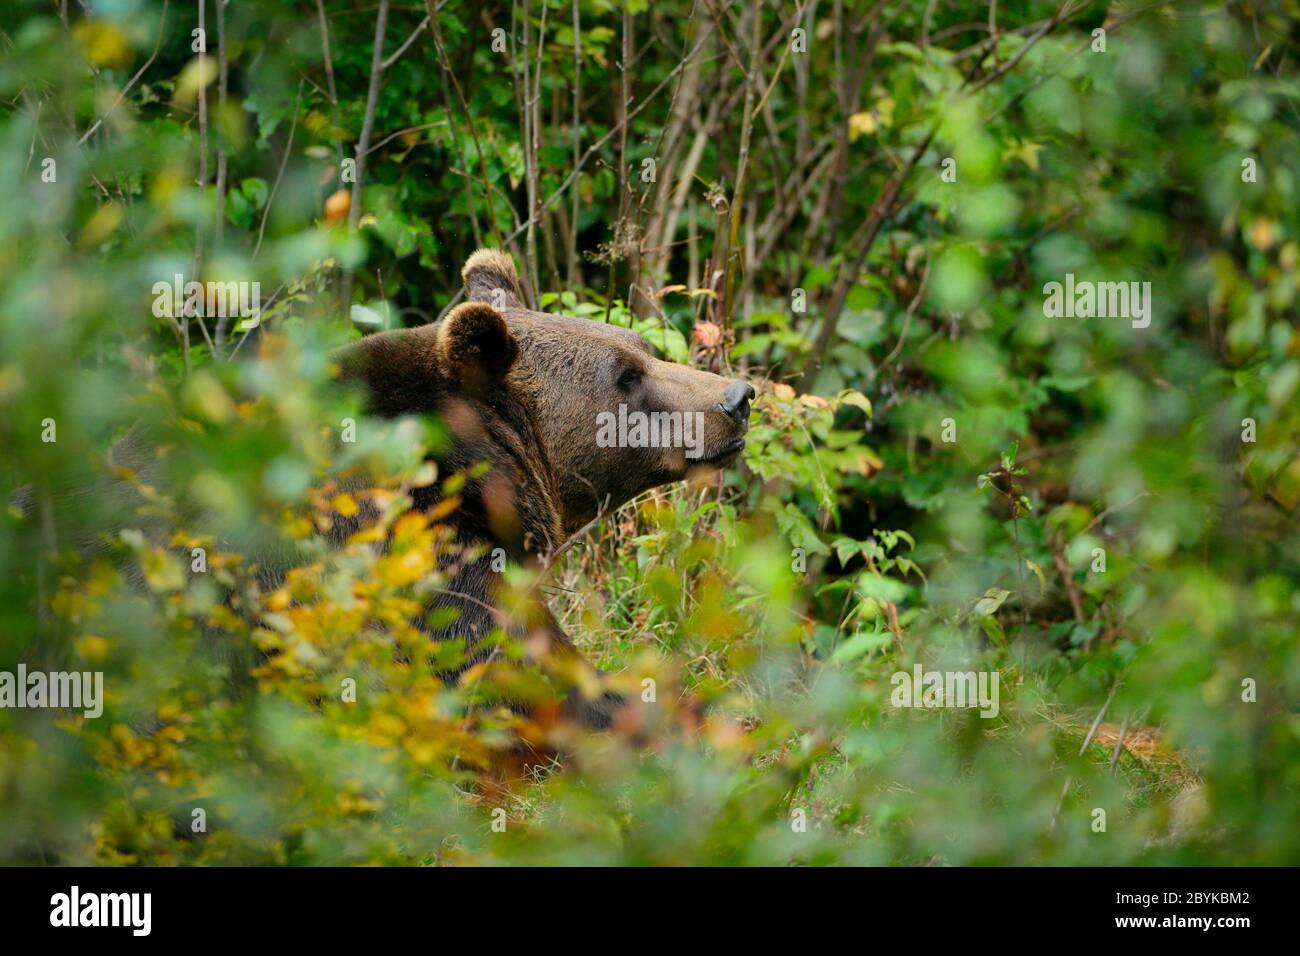 Brown Bear (Ursus arctos) in the forest of Tier-Freigelände, Bayerischer Wald National Park, Baviera, Germany, October Stock Photo